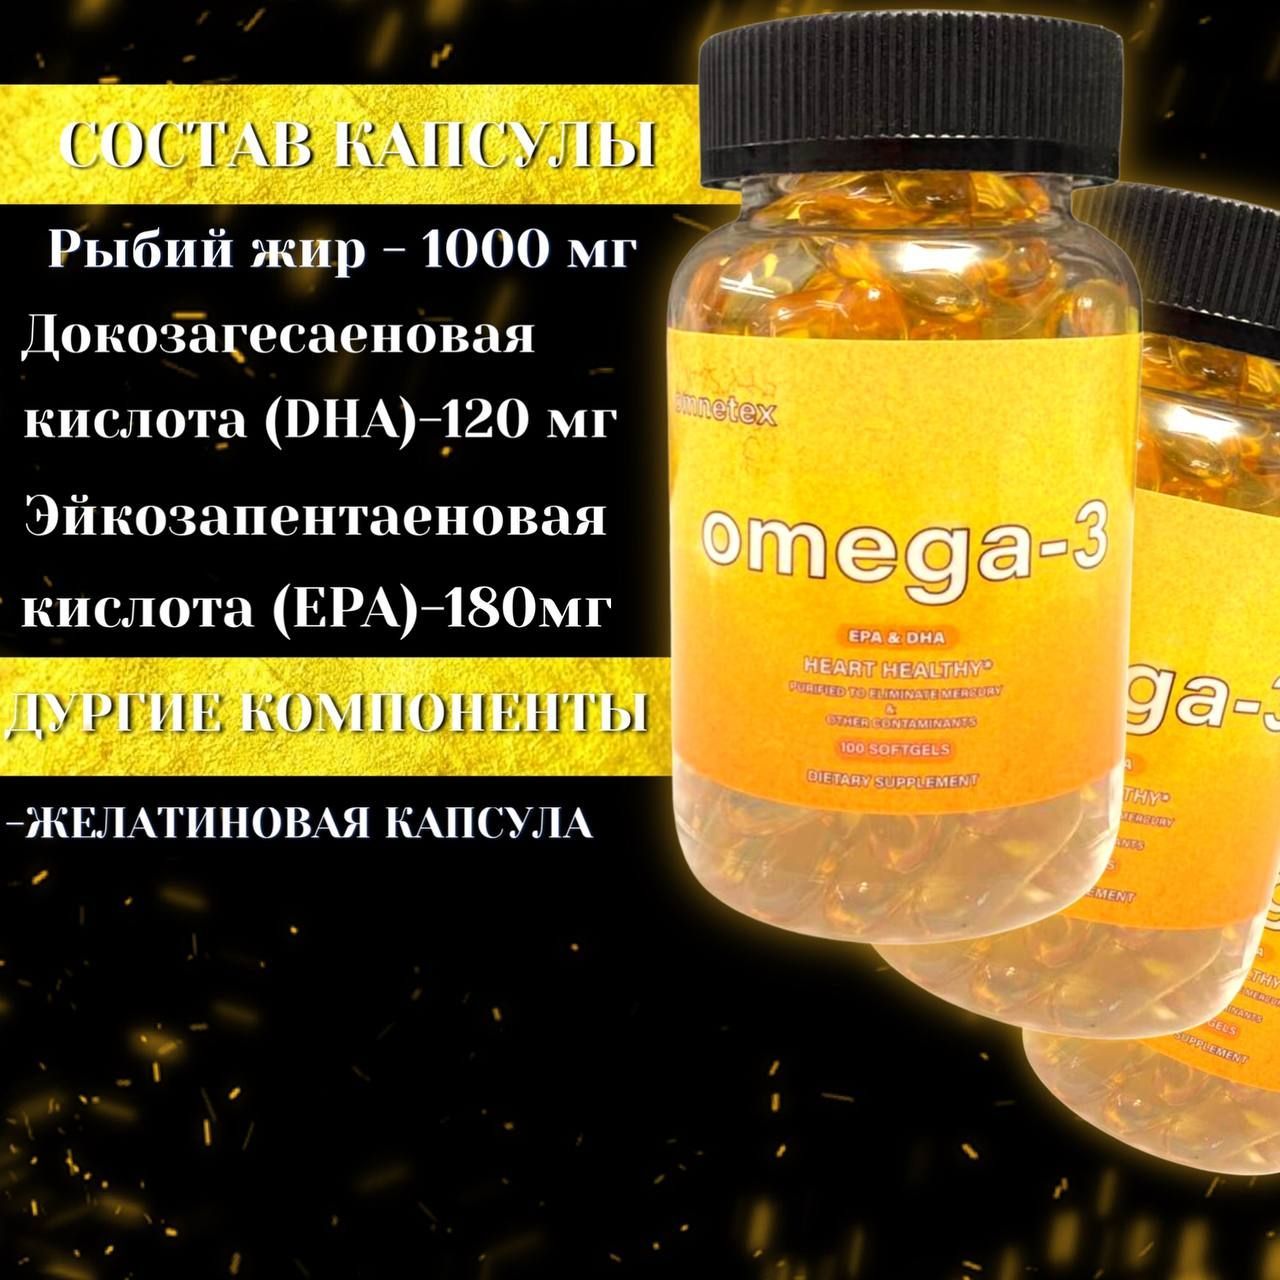 Omega 3 950 epa dha. Омега- 3 1000 мг. Омега 3 для волос и кожи. Омега-3 калорийность 1 капсулы. Омега 3 состав EPA DHA что означает.